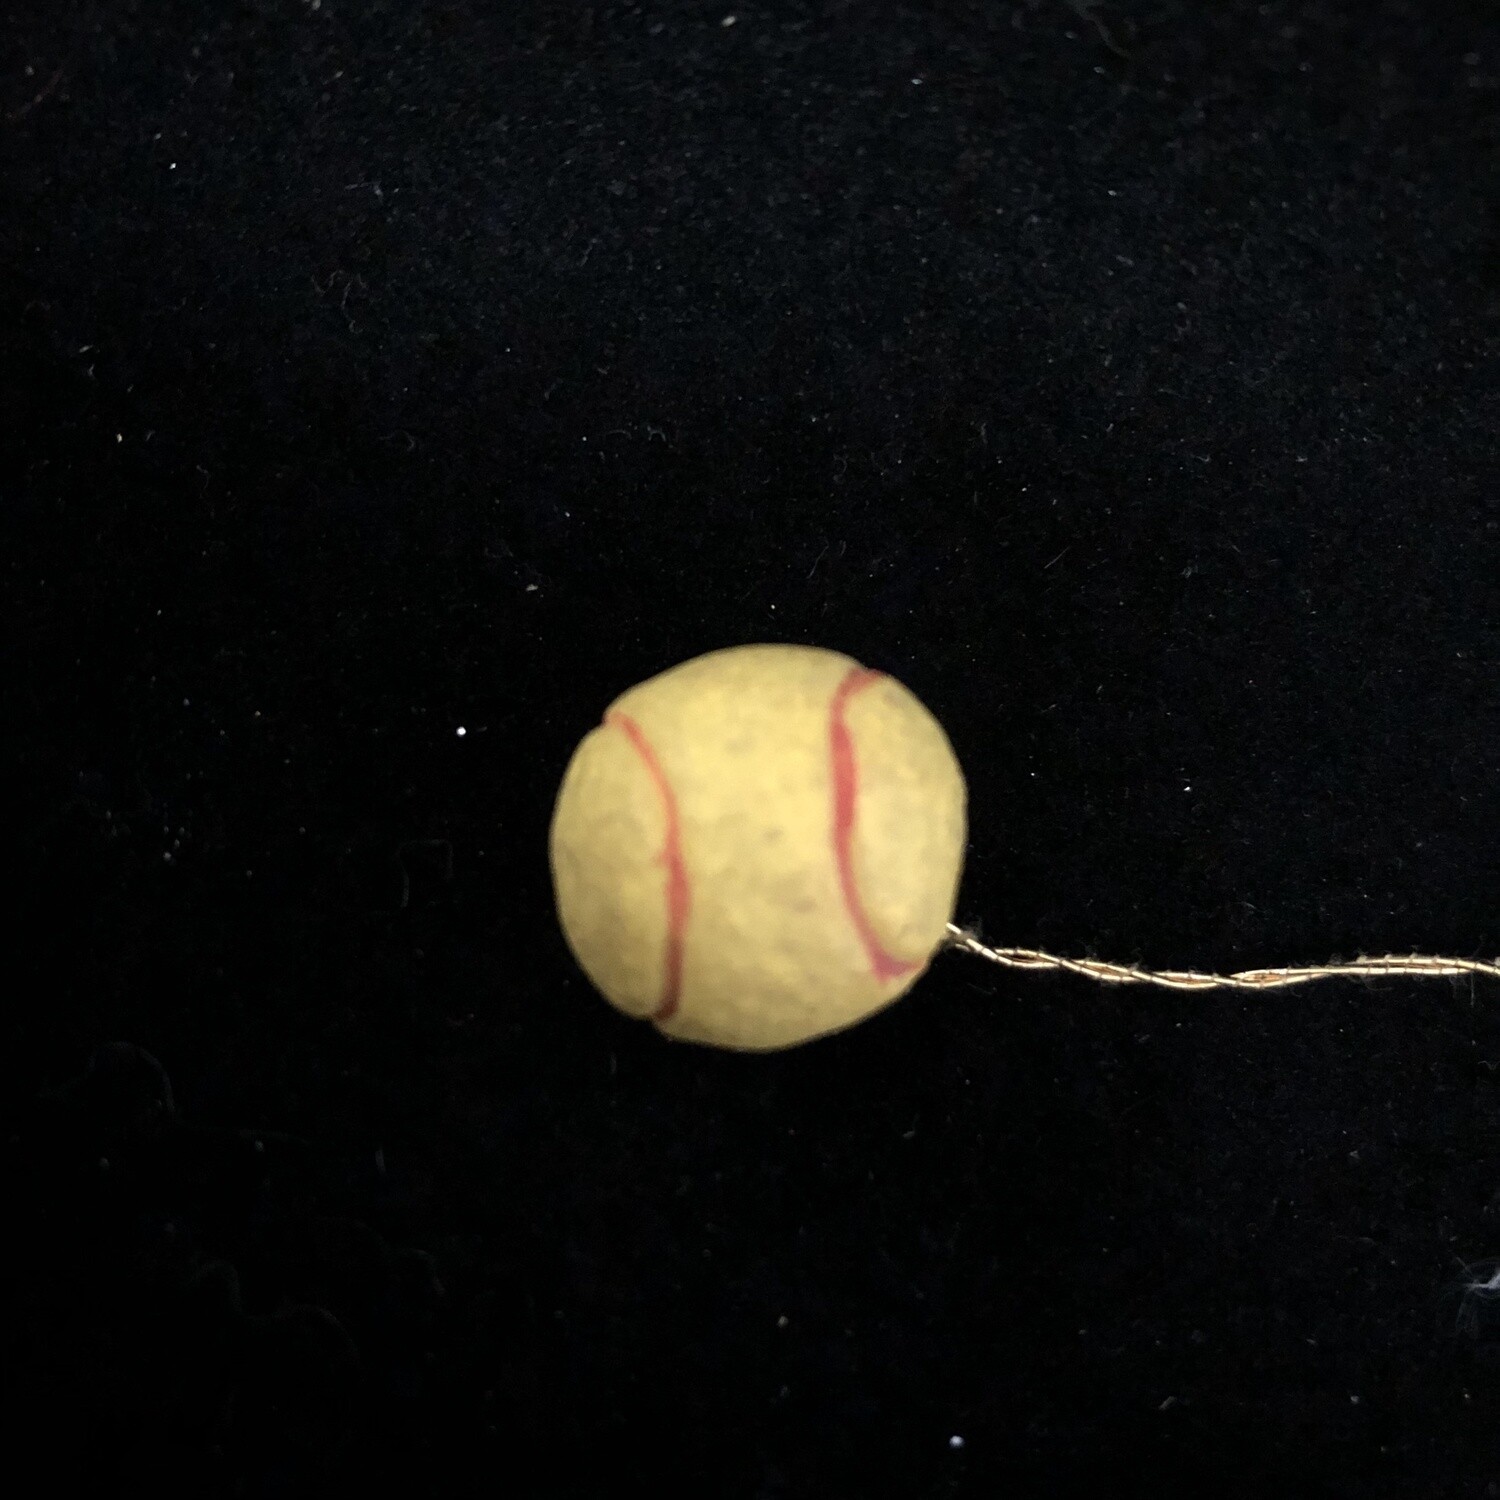 102- Small 3D Softball/Tennis Ball